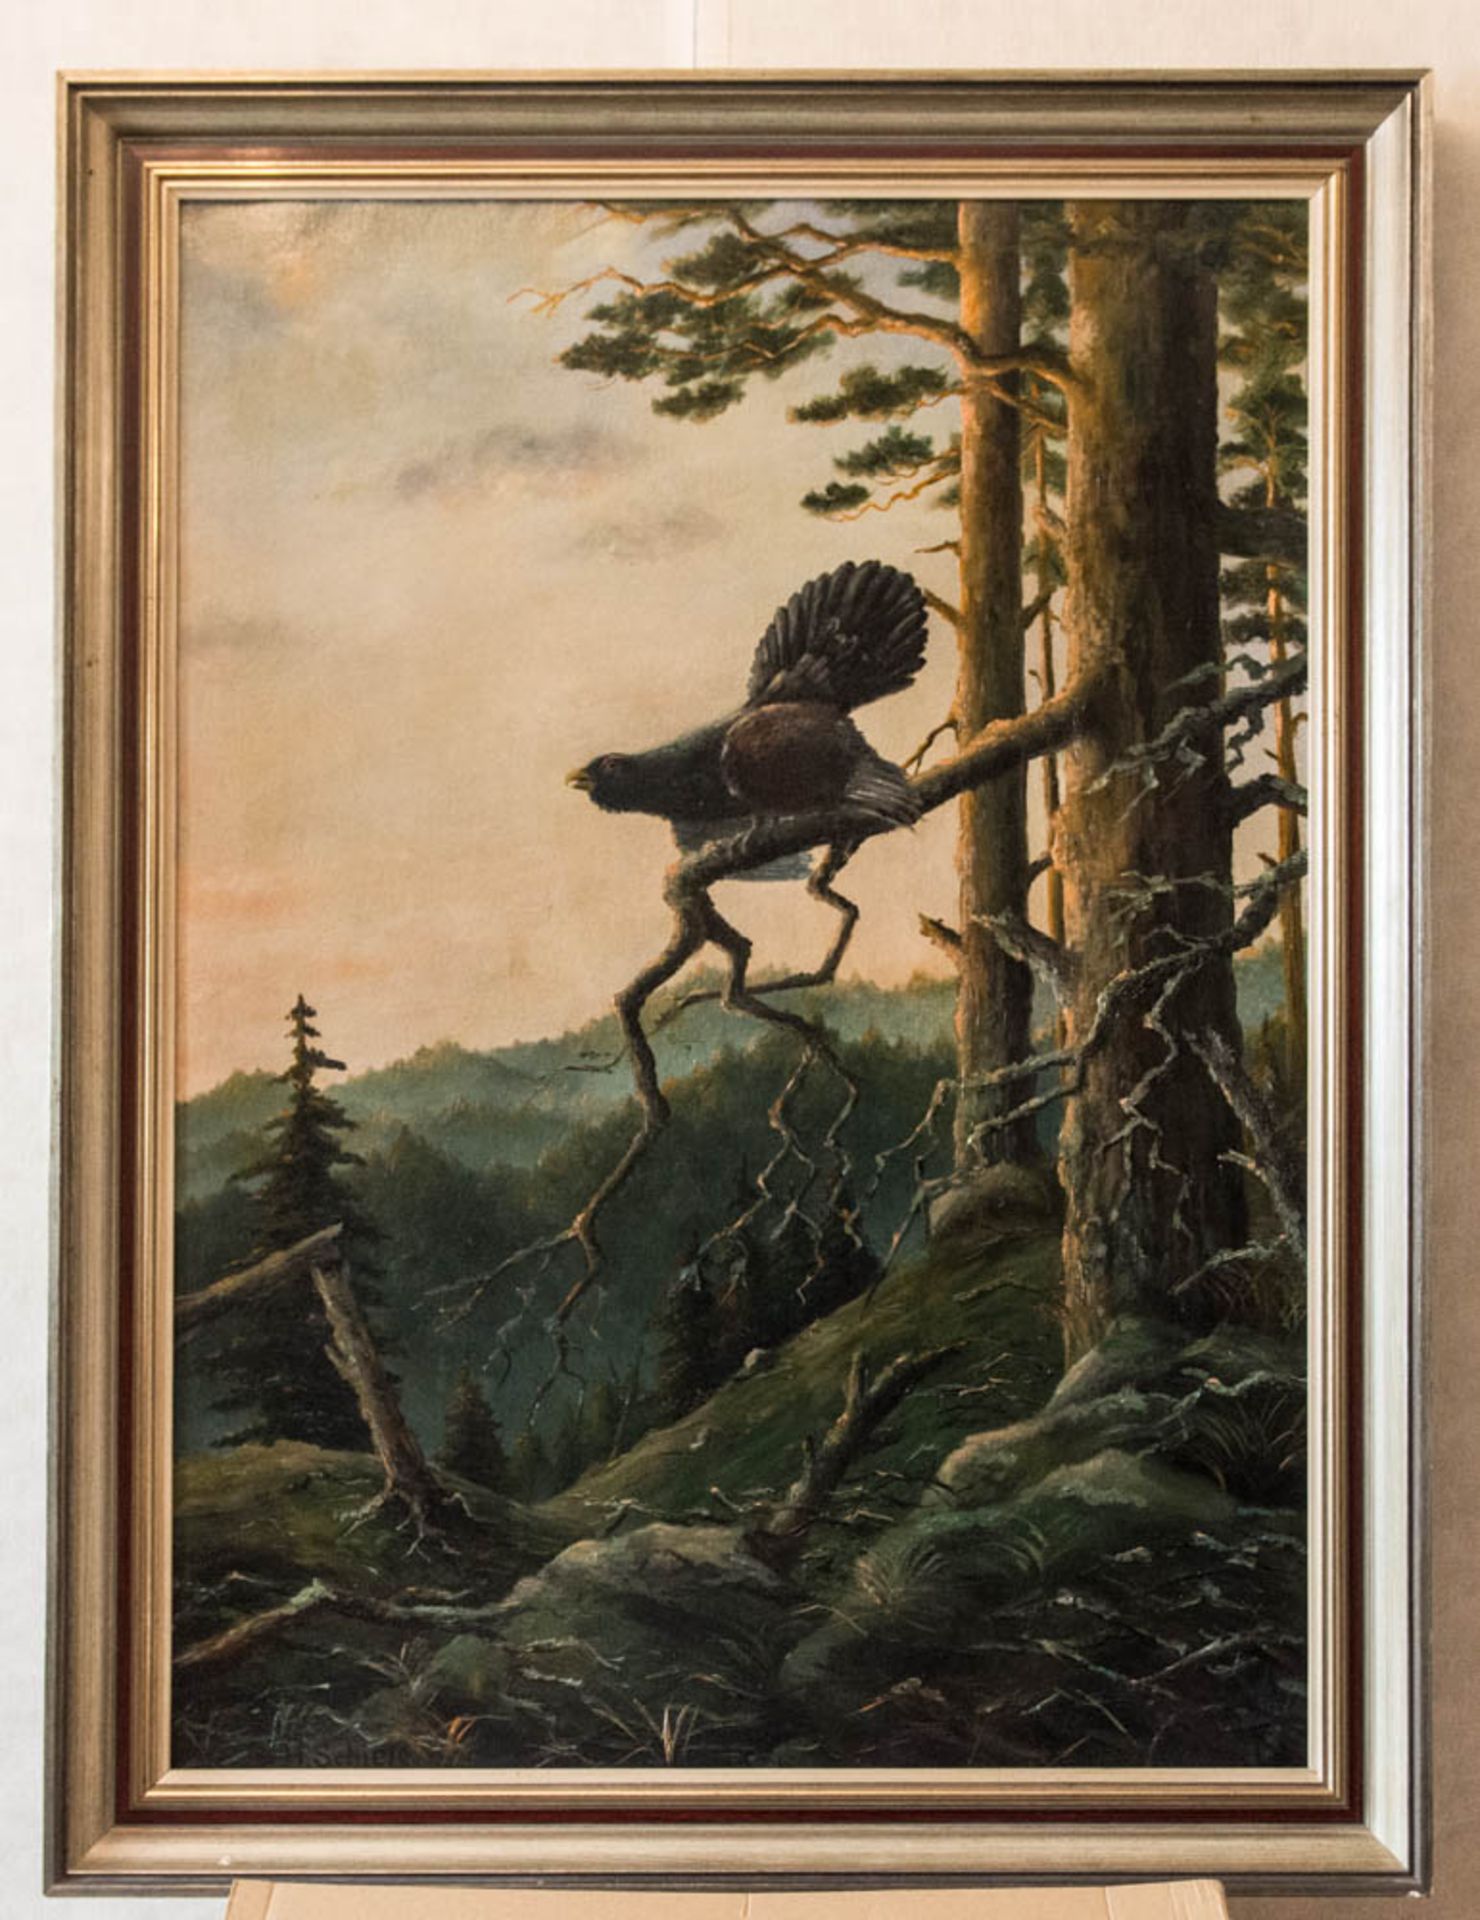 Gemälde "Auerhahn" von H. Schiele